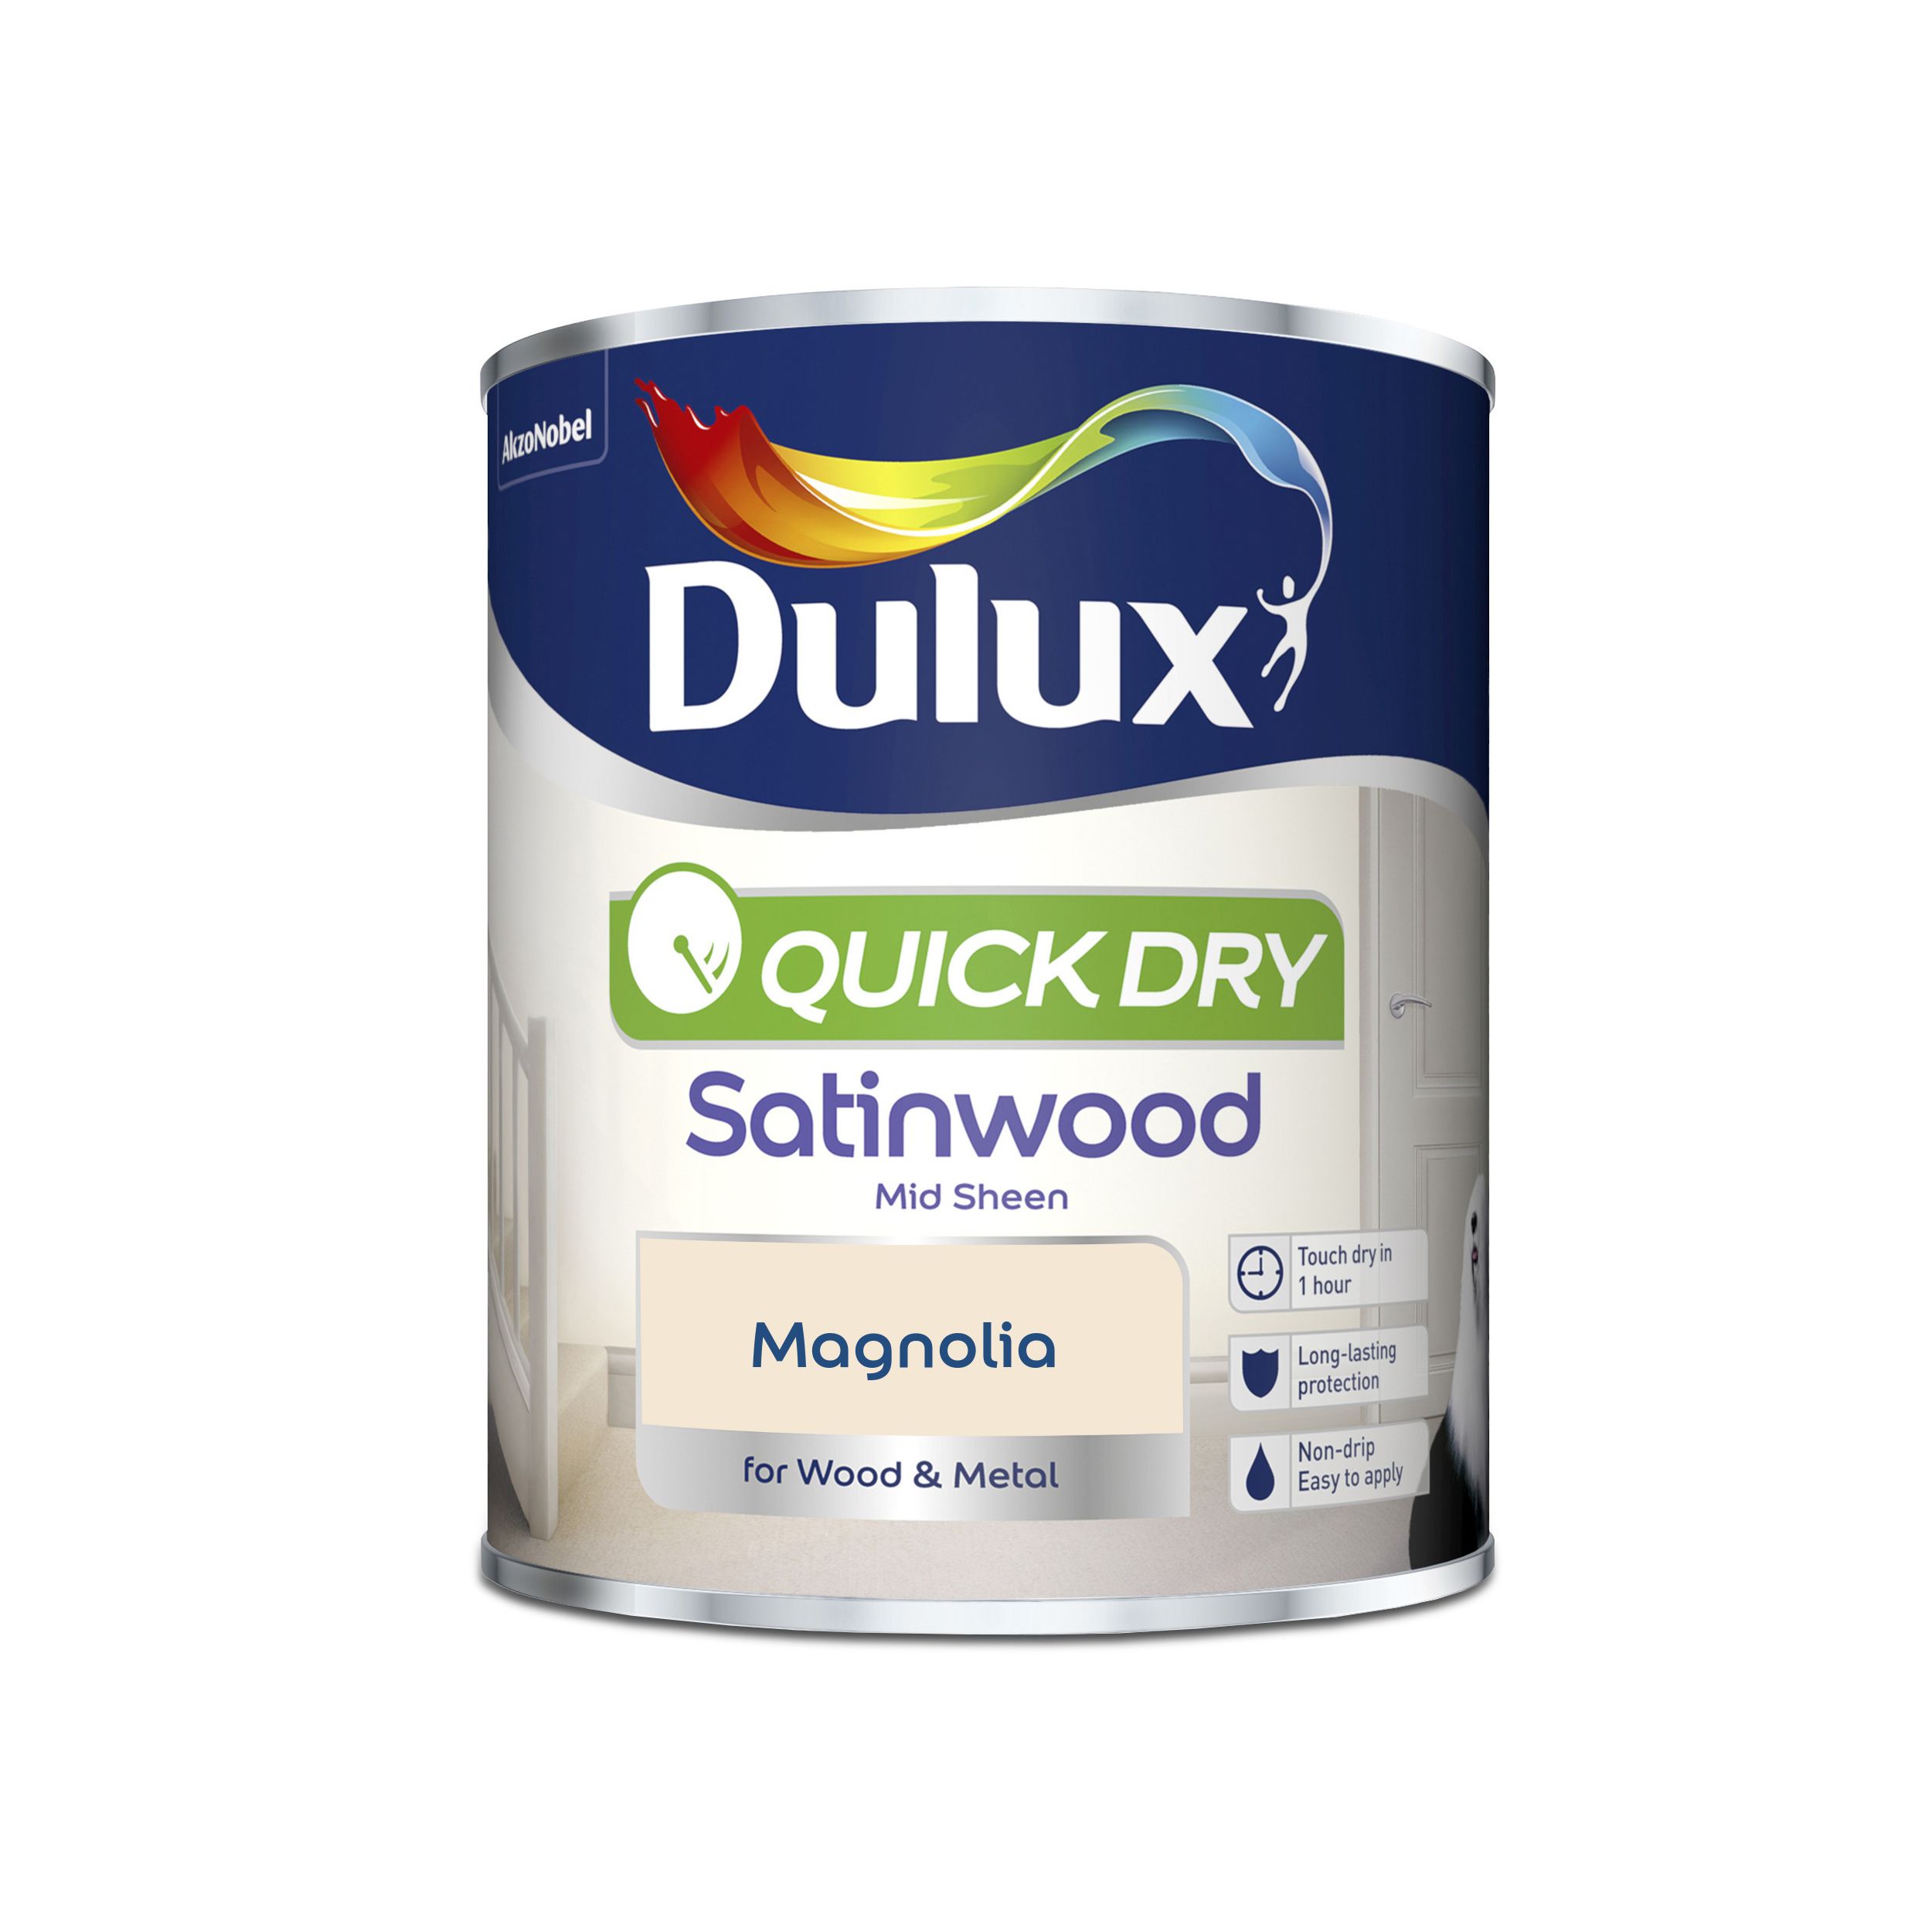 Dulux Magnolia Satinwood Metal & wood paint, 750ml